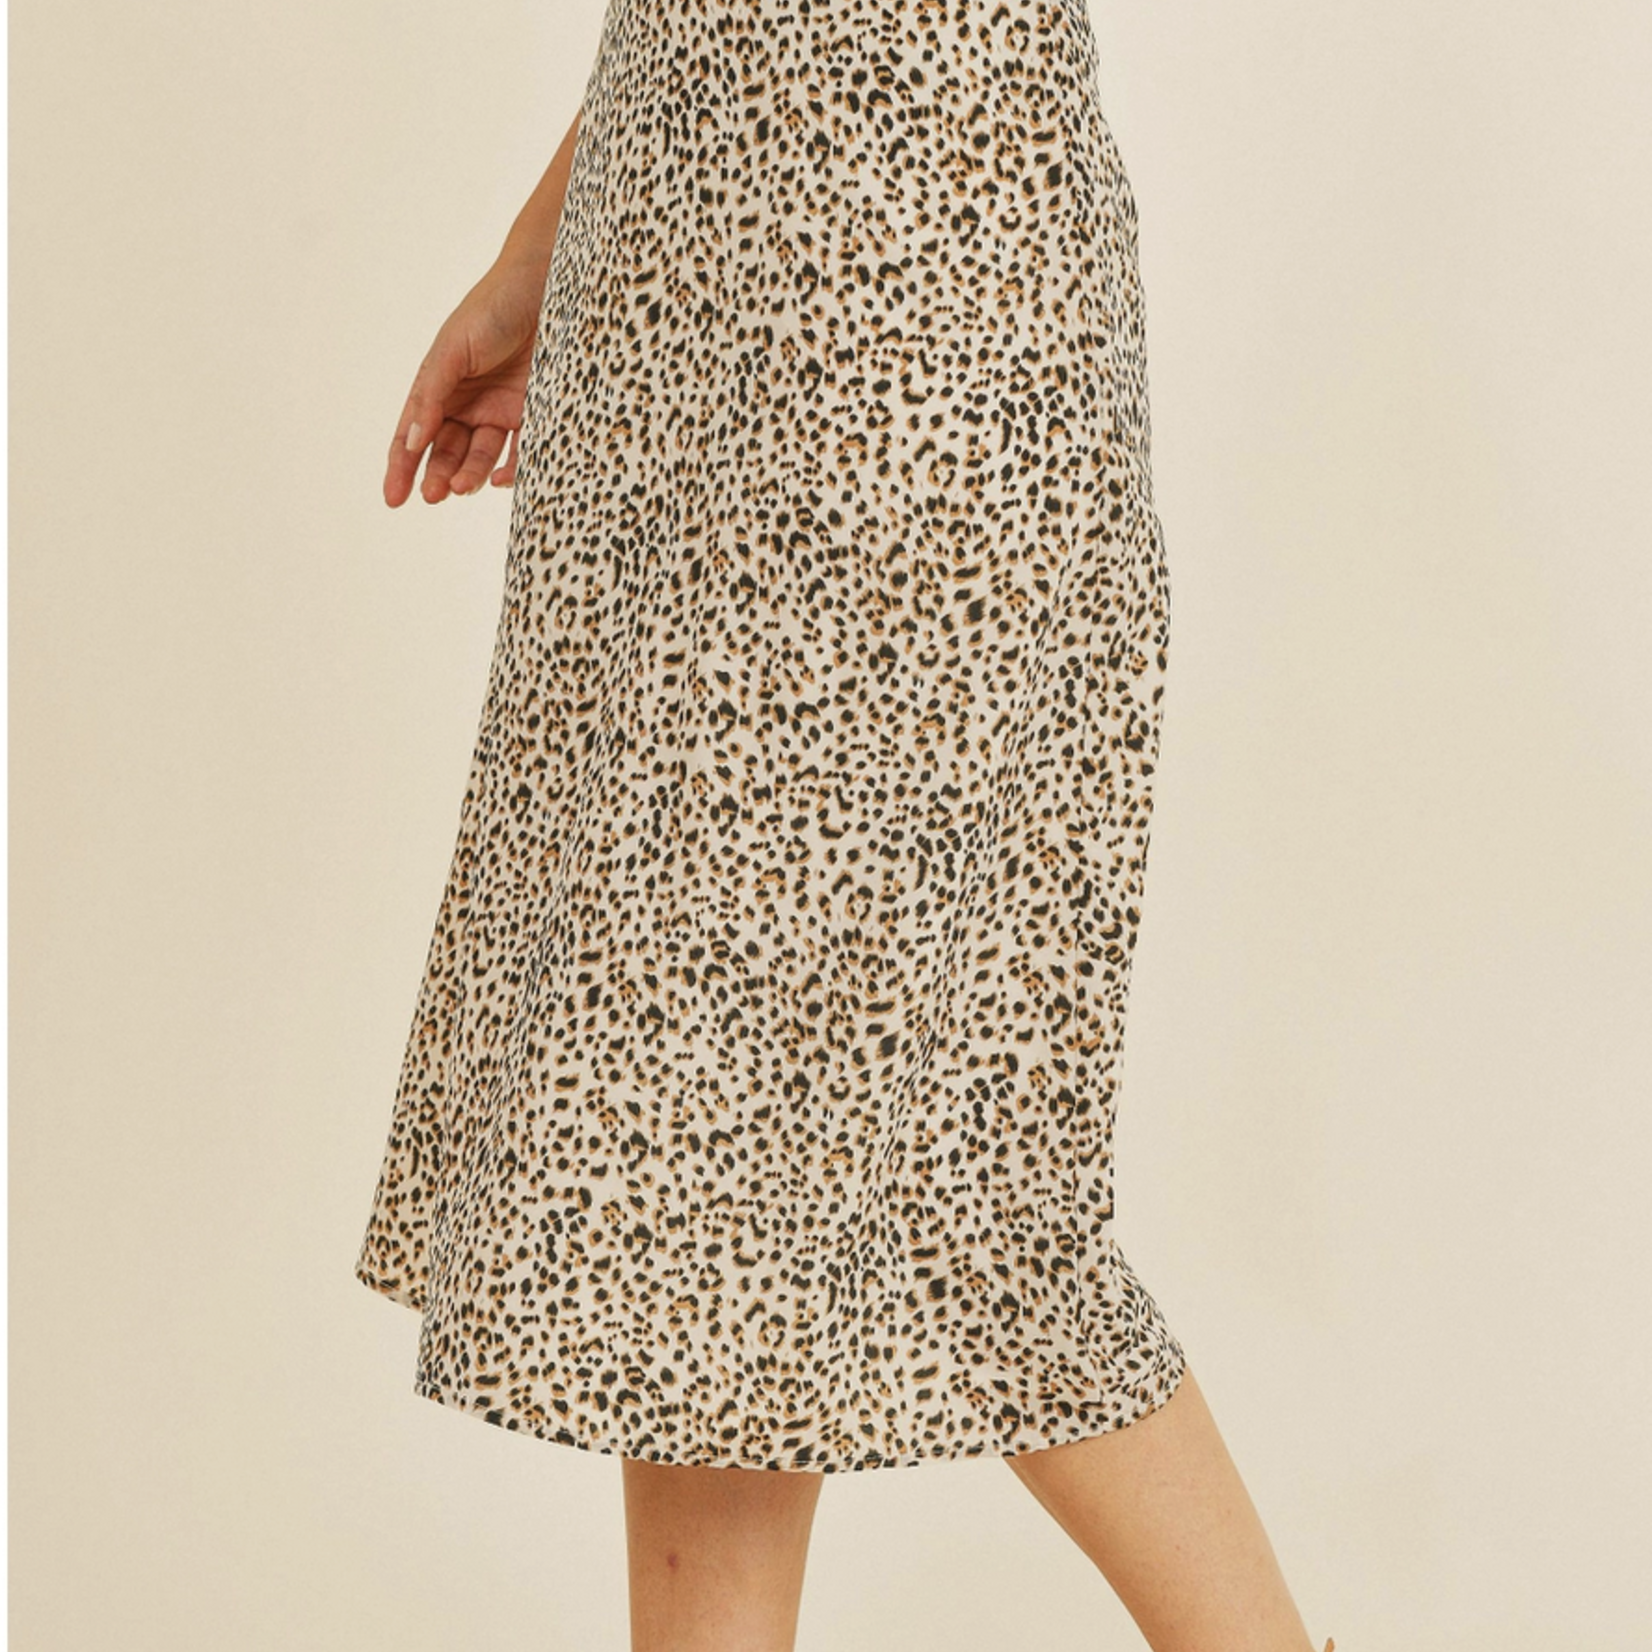 Follow Along Leopard Print Skirt